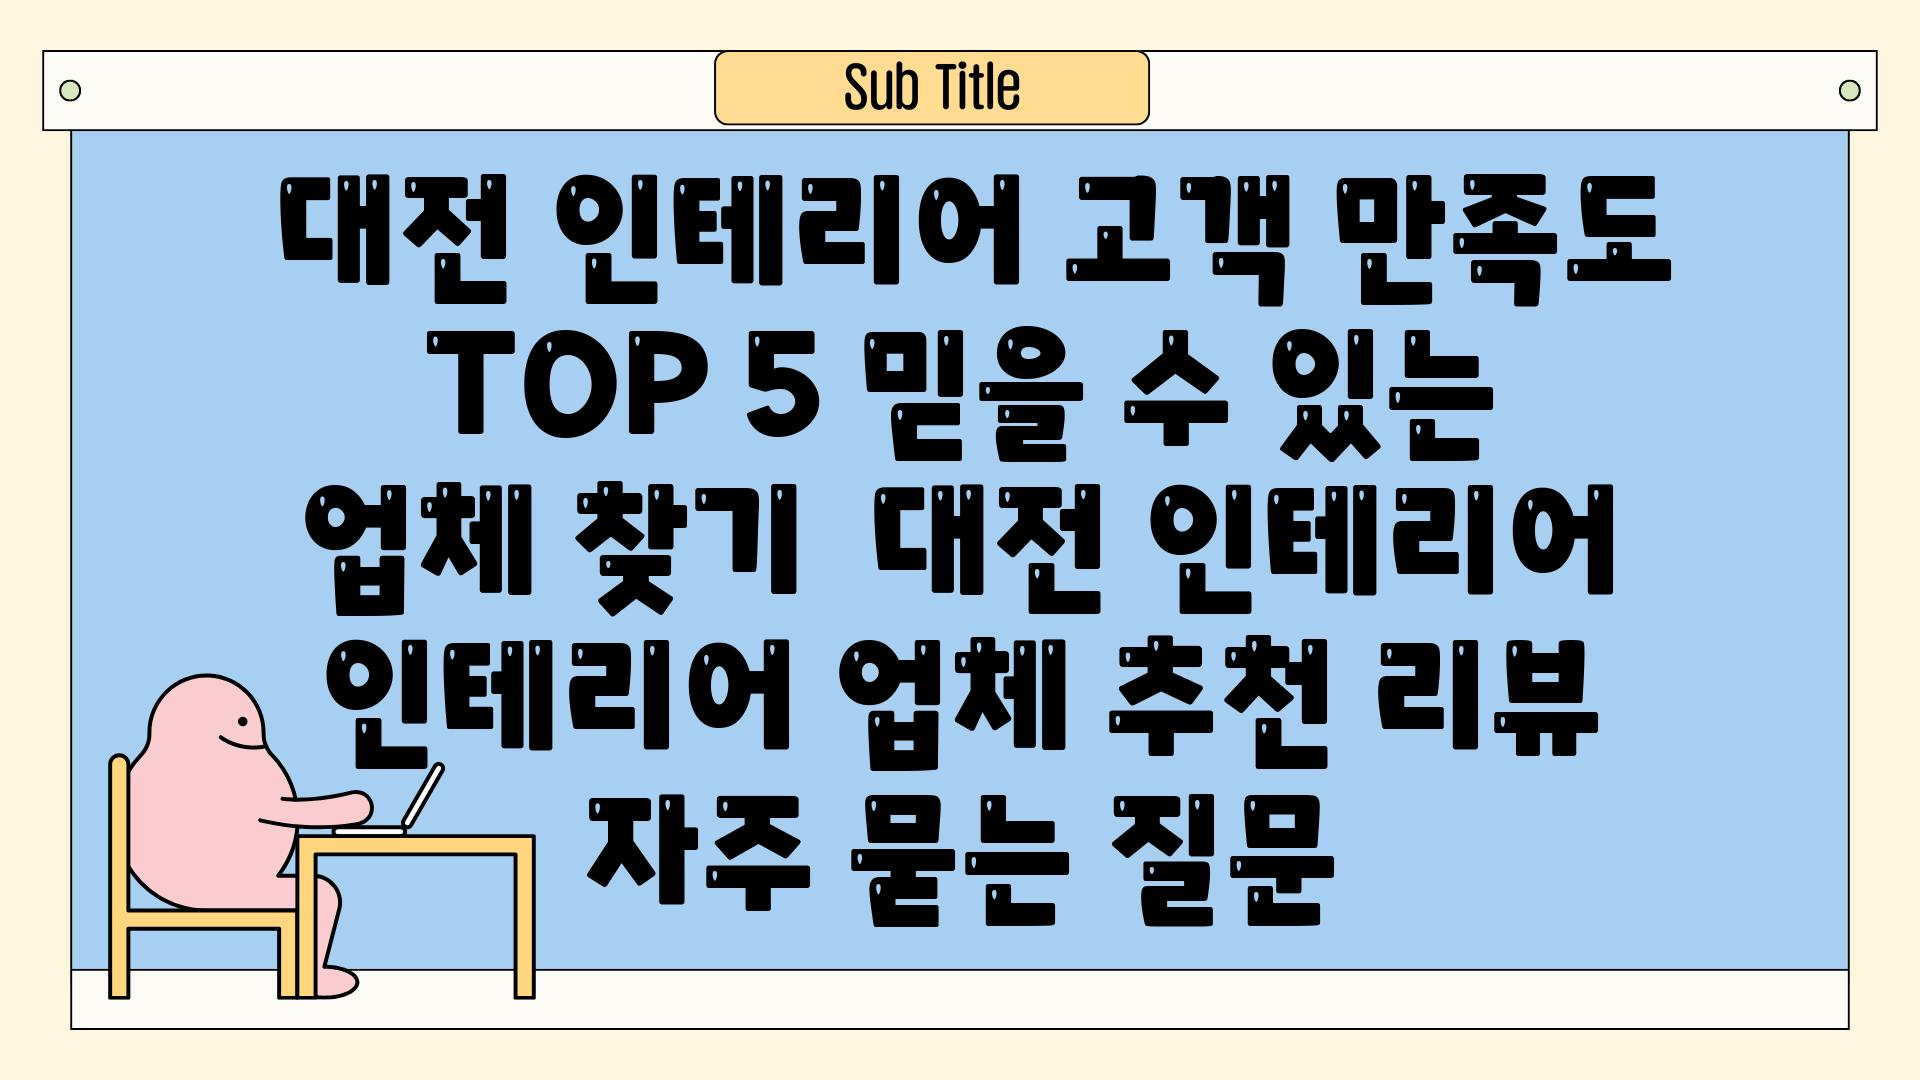  대전 인테리어 고객 만족도 TOP 5 믿을 수 있는 업체 찾기  대전 인테리어 인테리어 업체 추천 리뷰 자주 묻는 질문